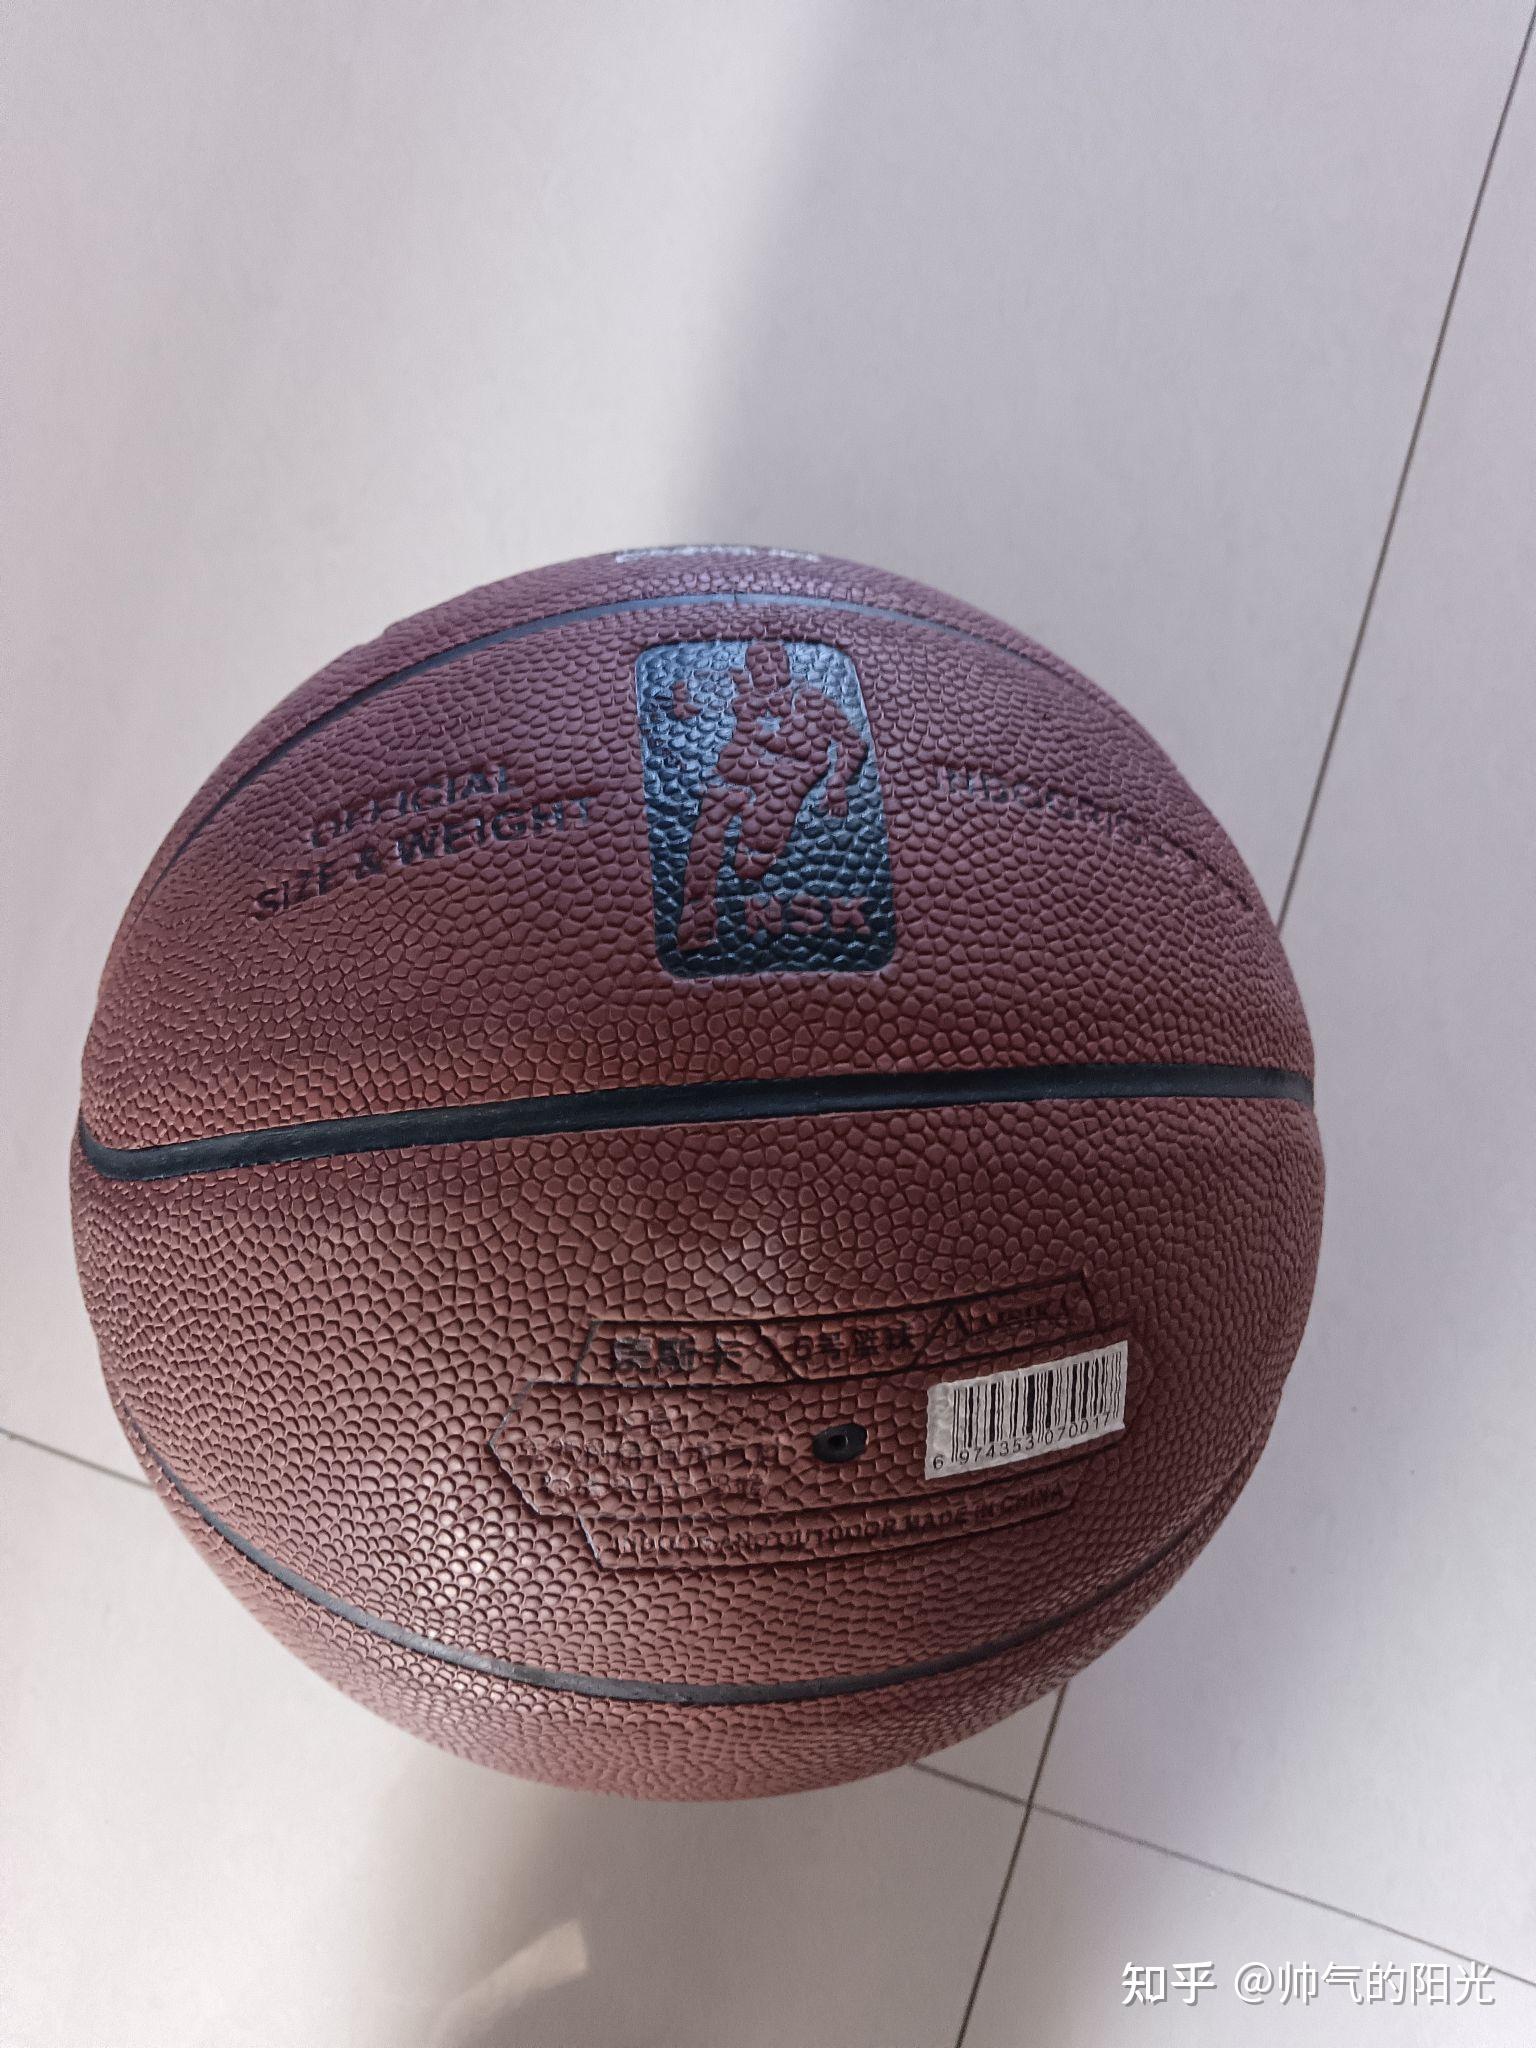 NBA球星科比 亲笔签名篮球 中国嘉德2022年秋拍-名人手迹 签名收藏网拍_首席收藏网 - ShouXi.com